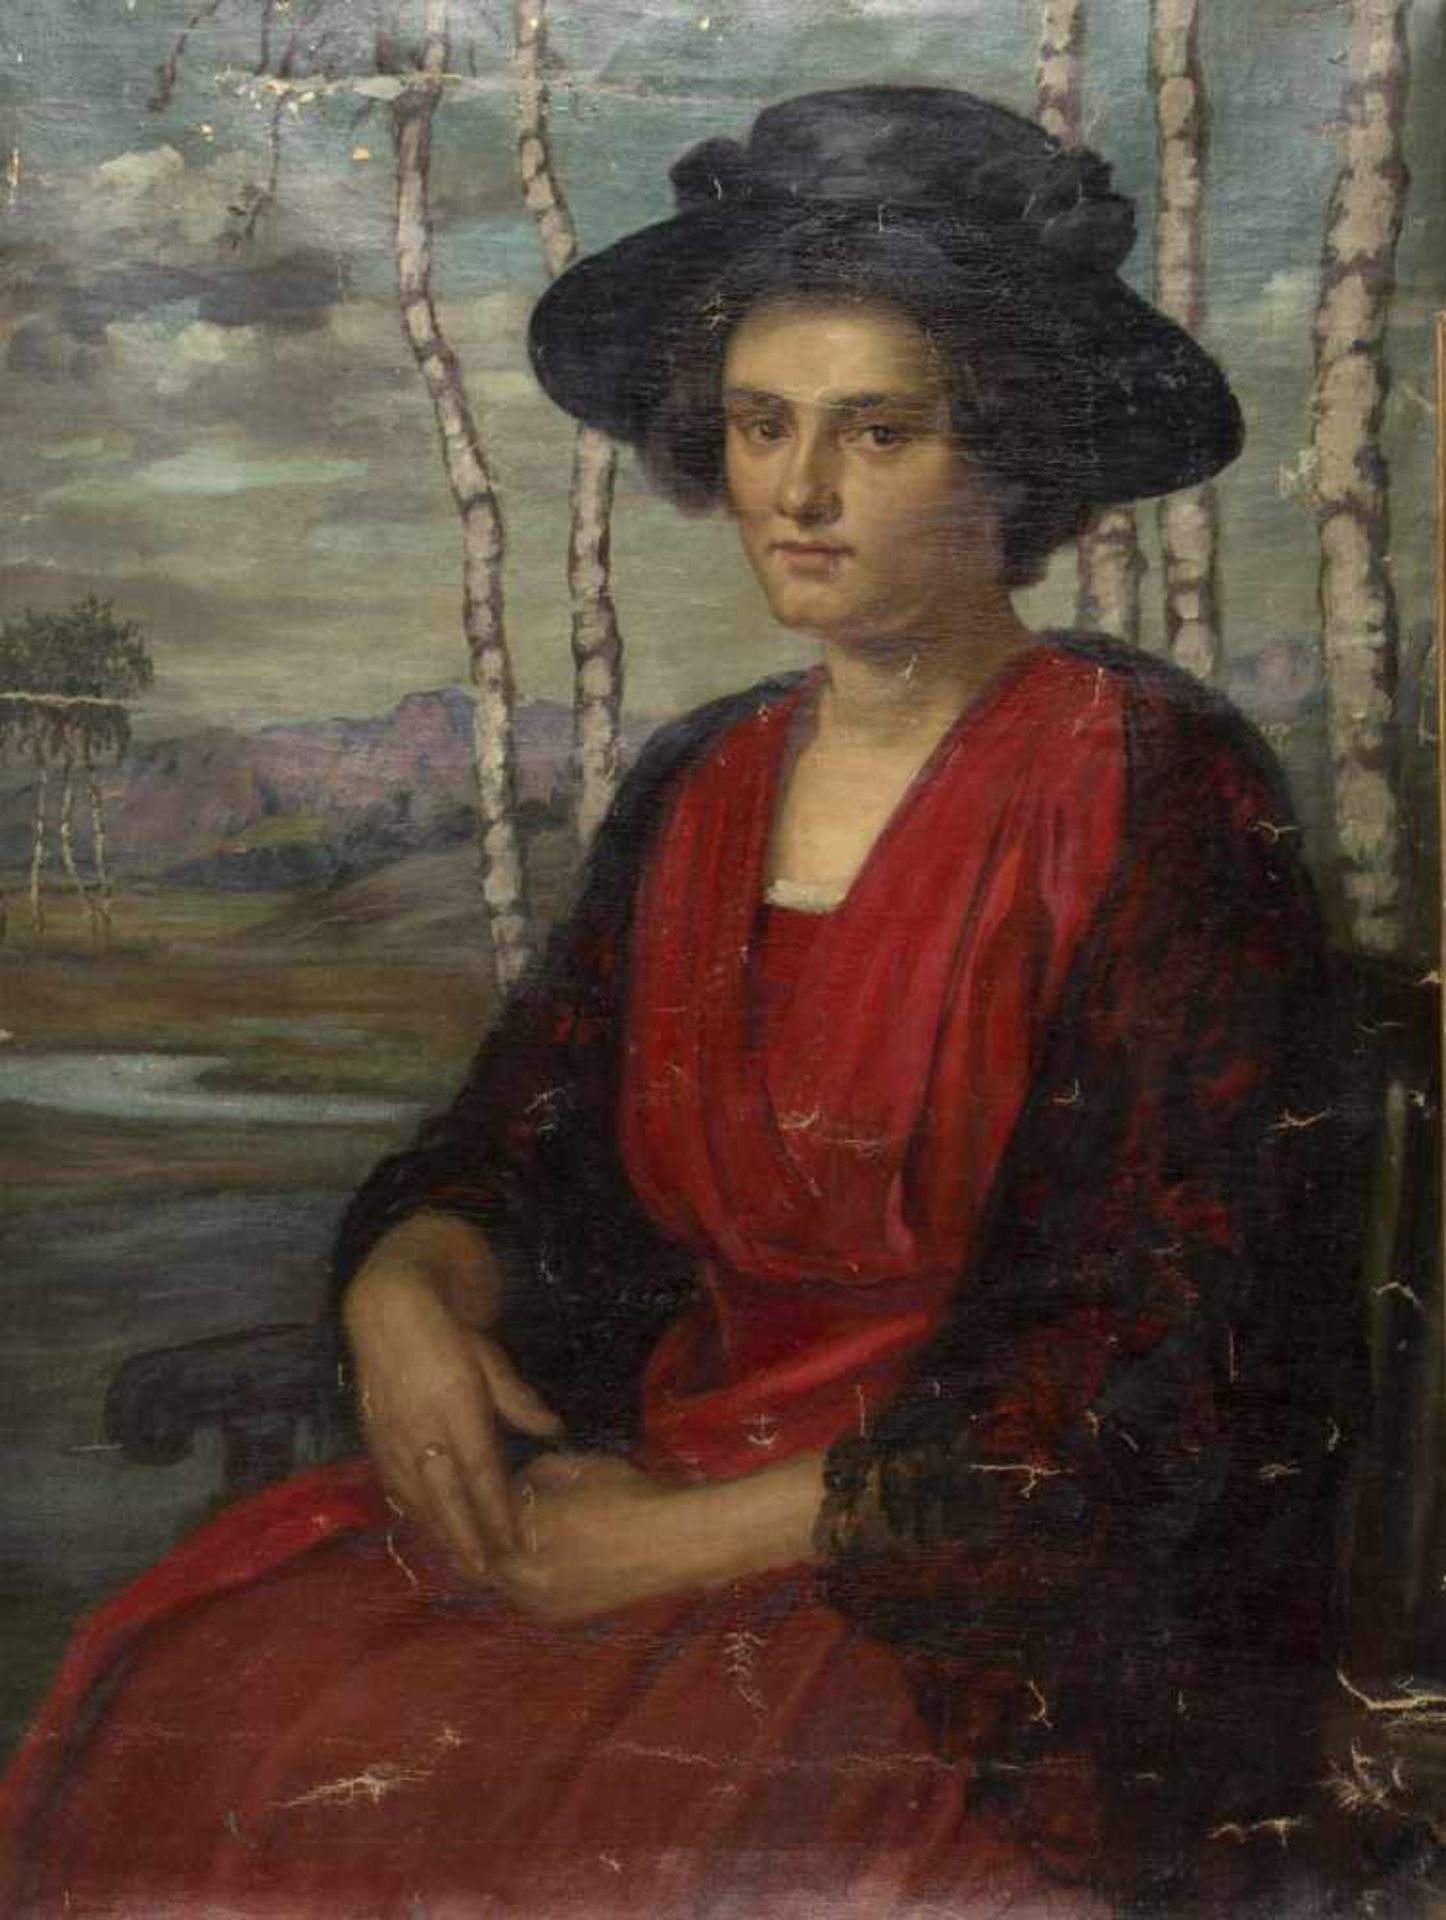 LewyBildnis einer sitzenden Frau vor einer Landschaft mit Birken. Öl/Lwd. 101 x 76,5 cm. Stark